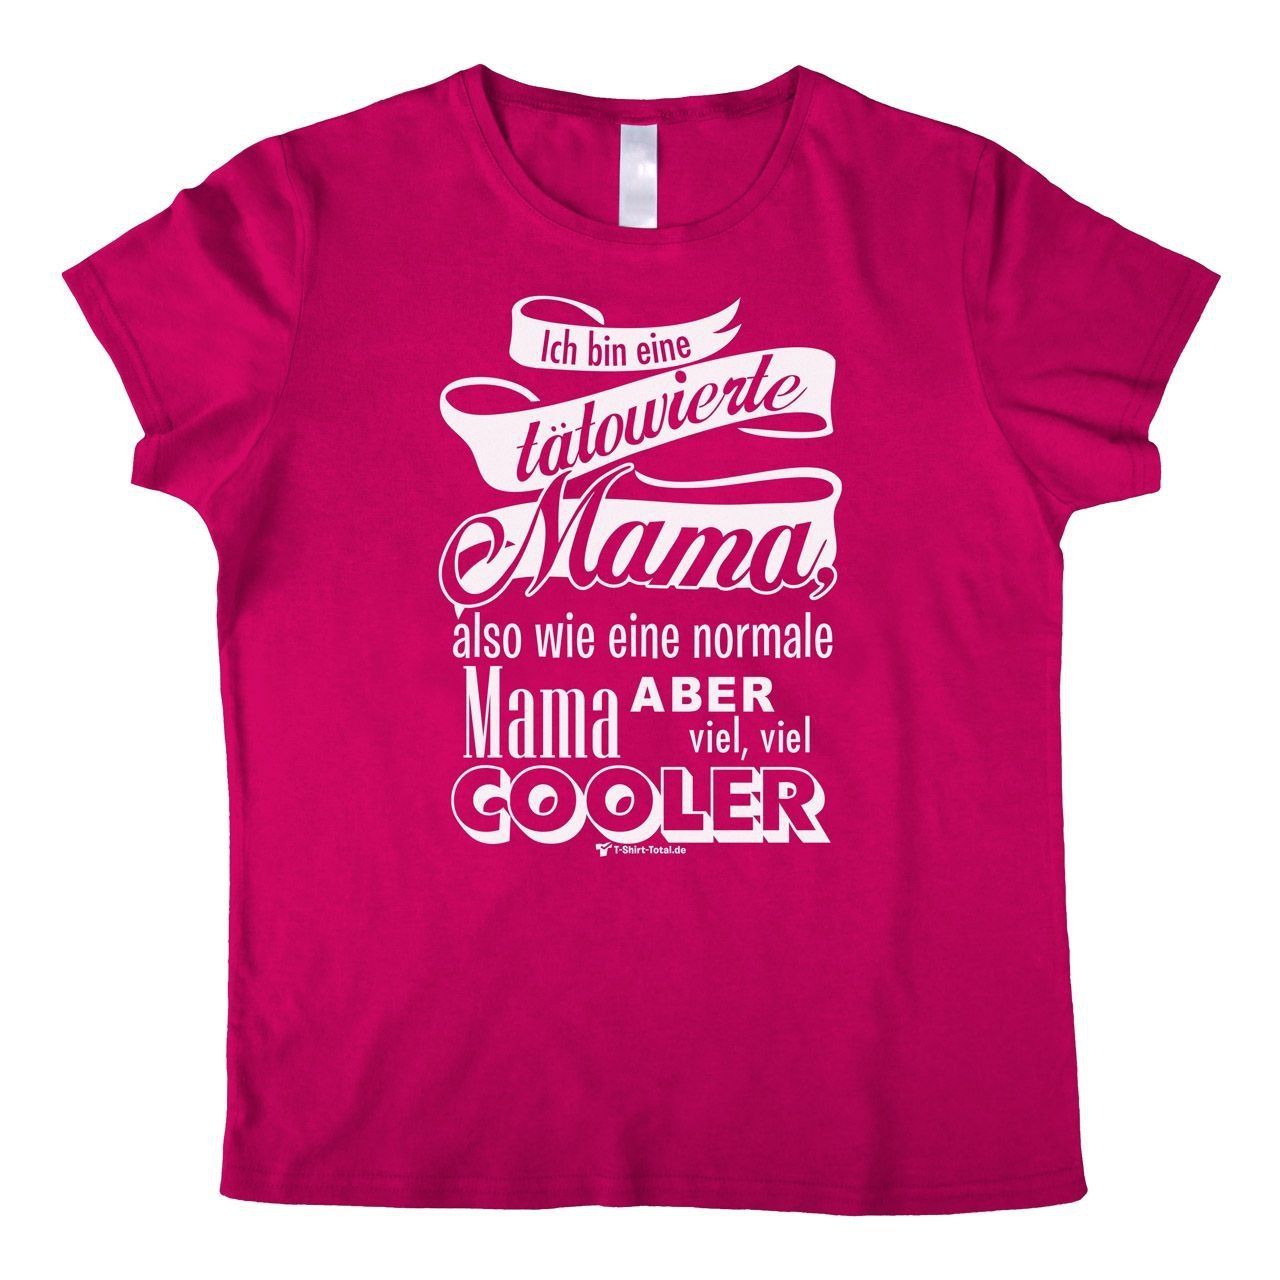 Tätowierte Mama Woman T-Shirt pink Small